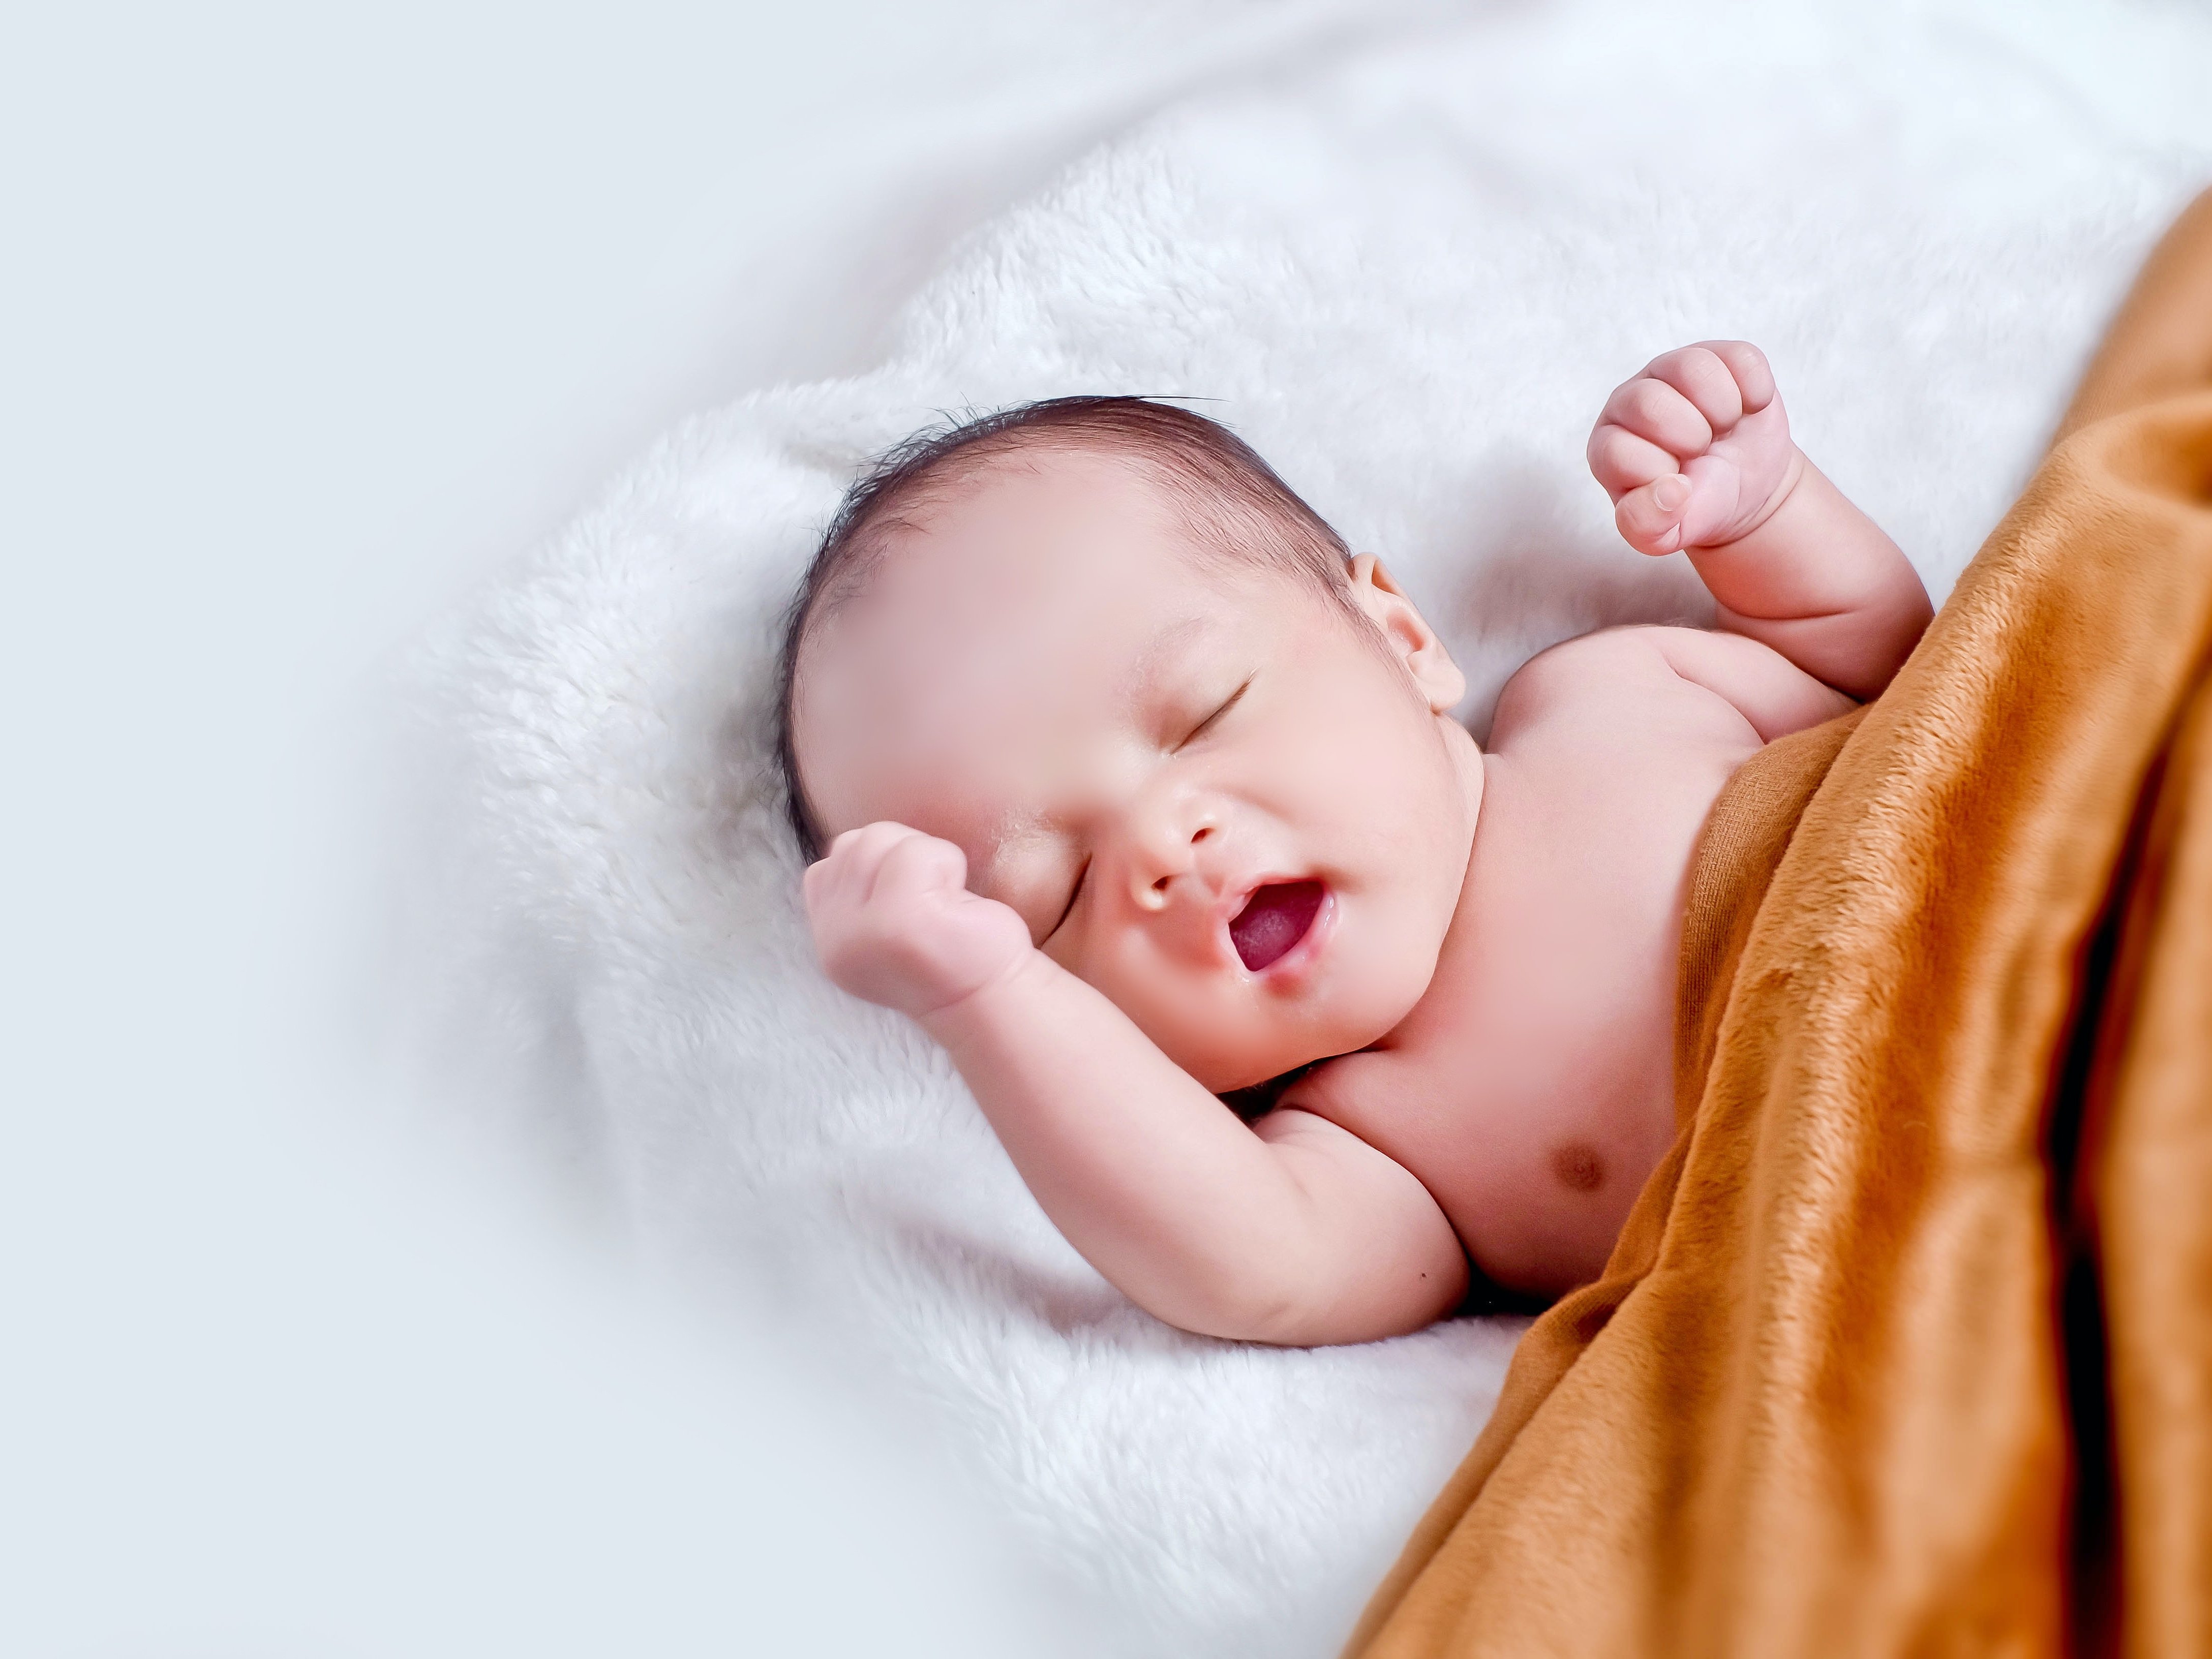 Ein Baby liegt mit dem Rücken auf einer weißen Decke und ist mit einer braunen Decke zugedeckt.  